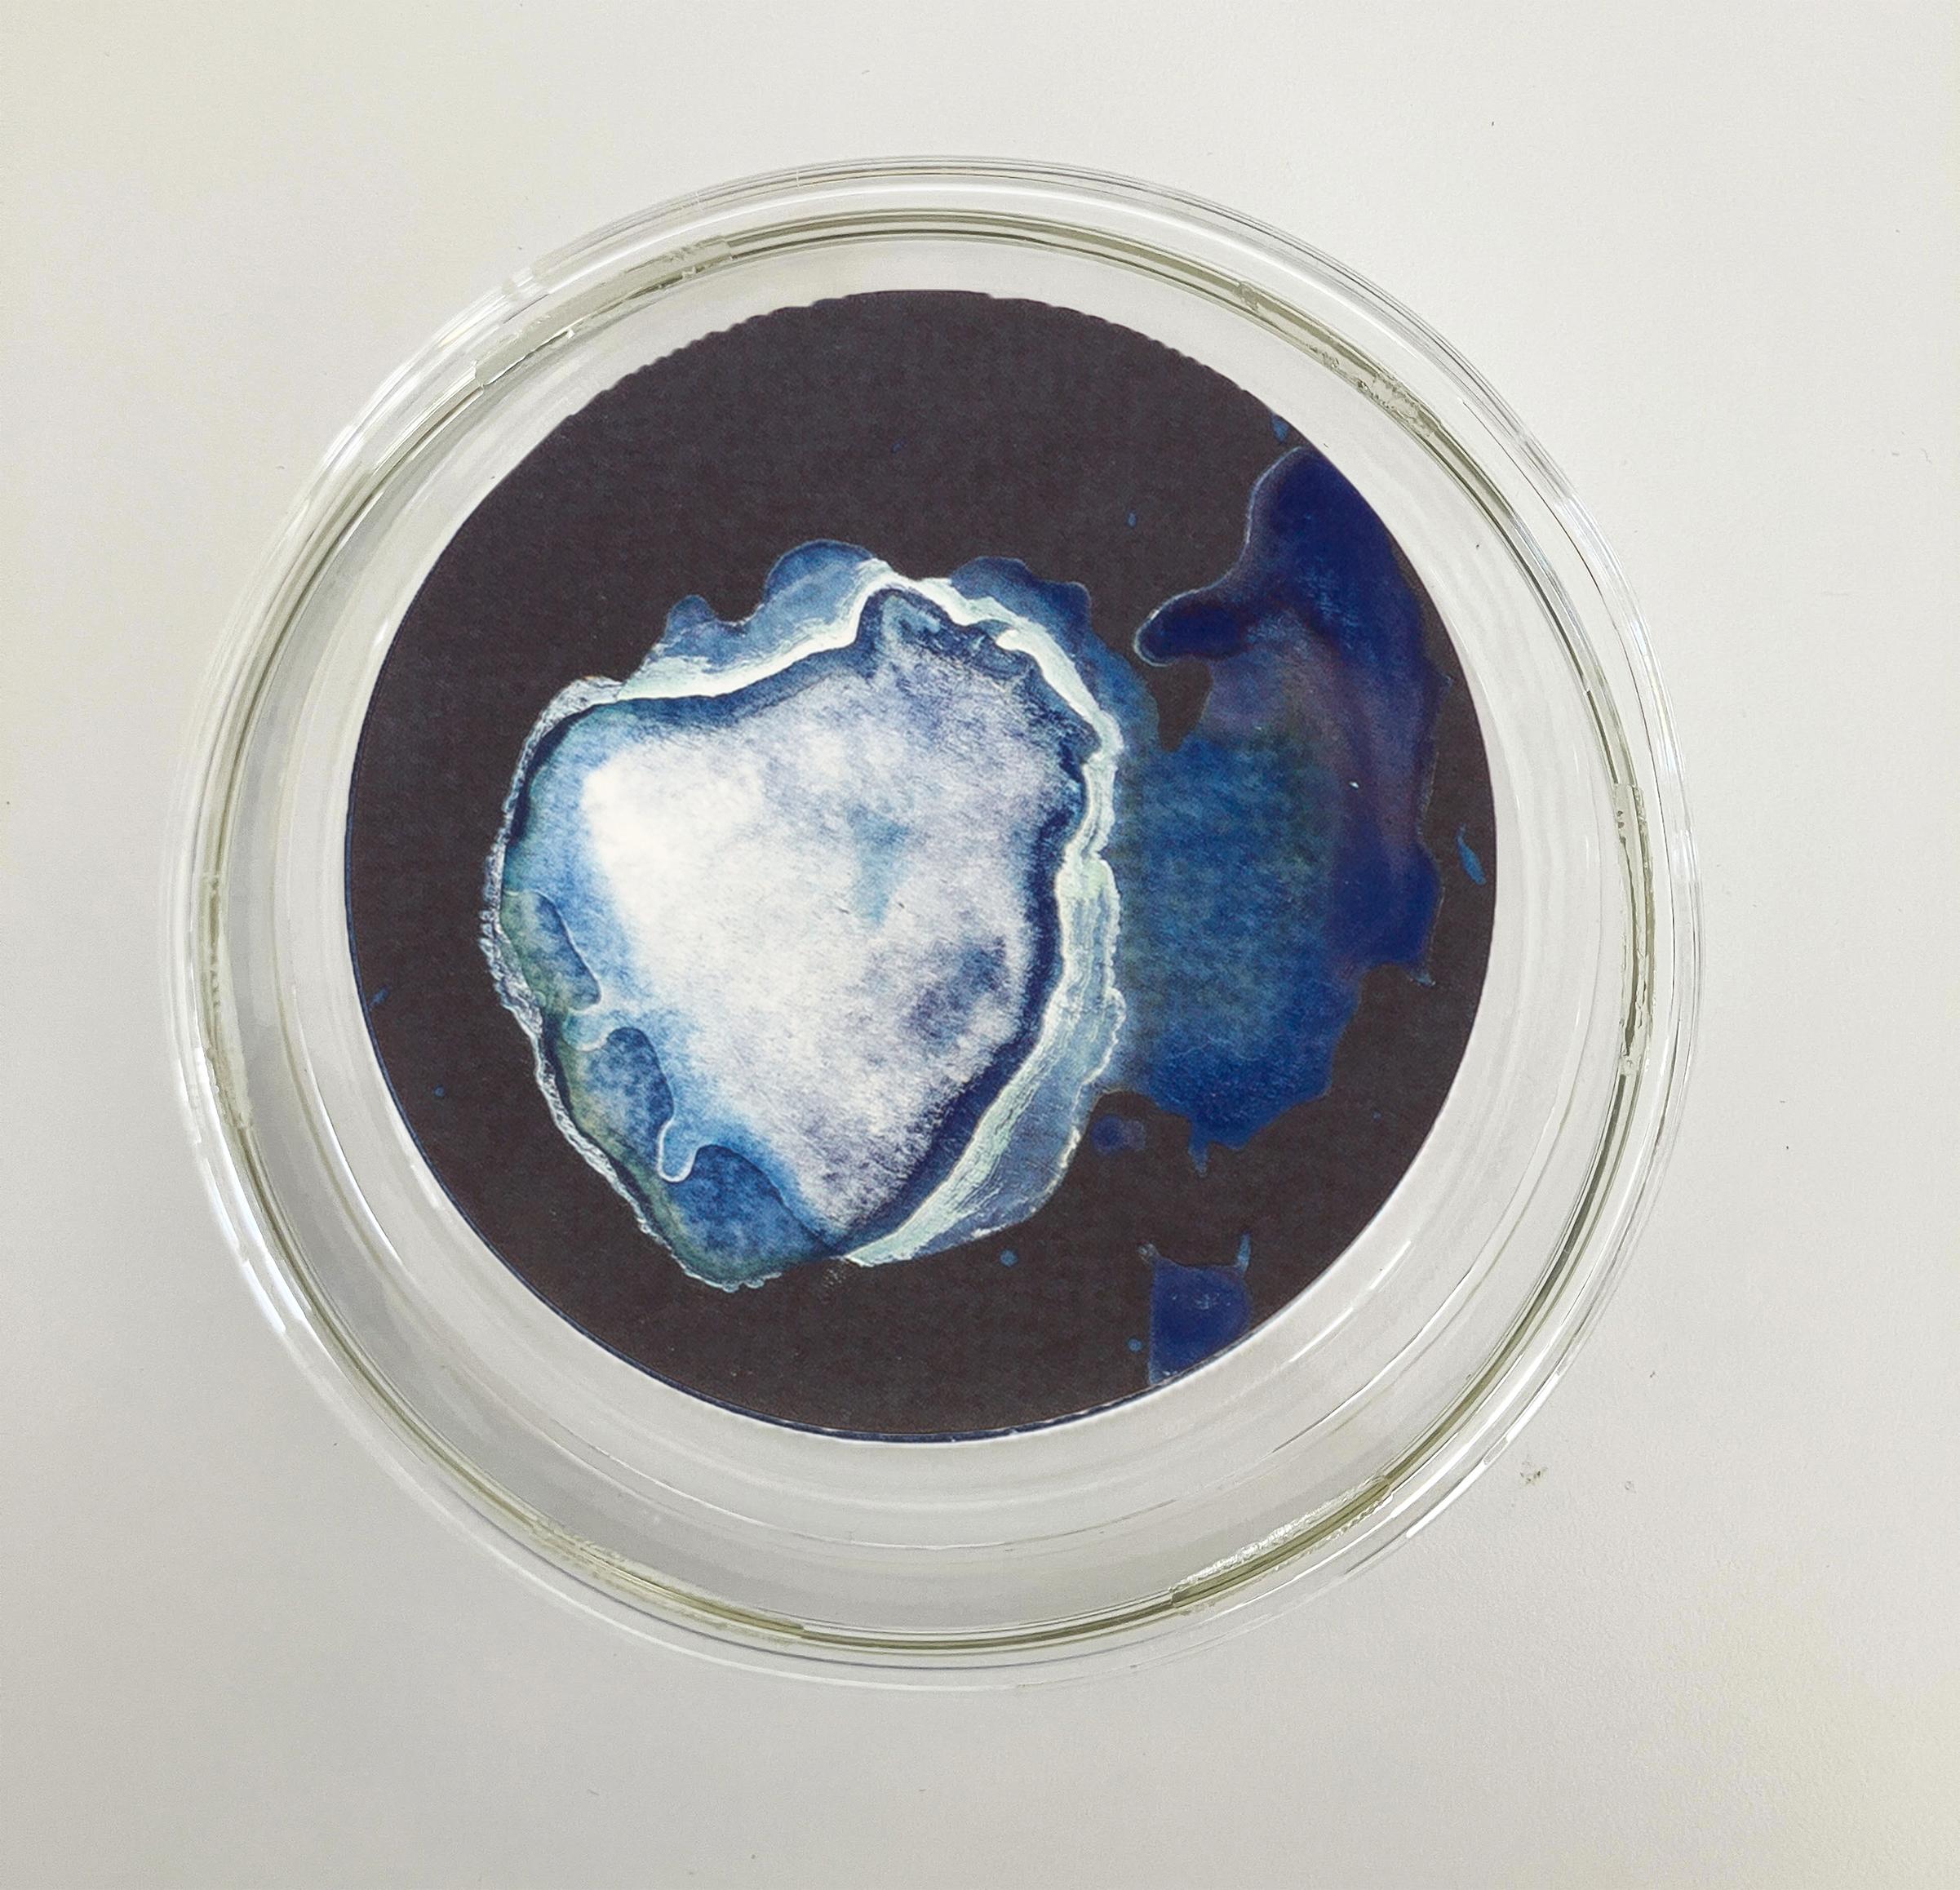 Medusas 11, 12 und 13. Cyanotypie-Fotografien, montiert in einer hochfesten Glasschale (Blau), Still-Life Sculpture, von Paola Davila